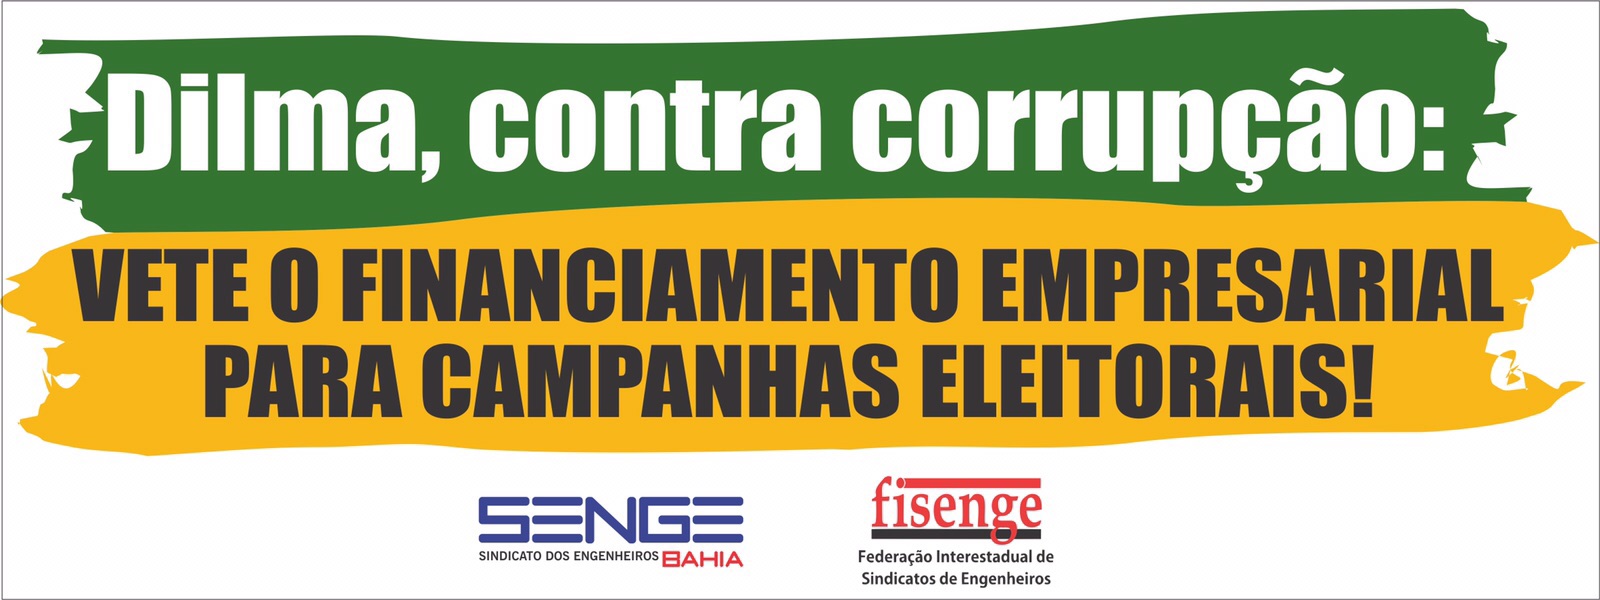 Campanha Senge Ba: Dilma, contra corrupção!